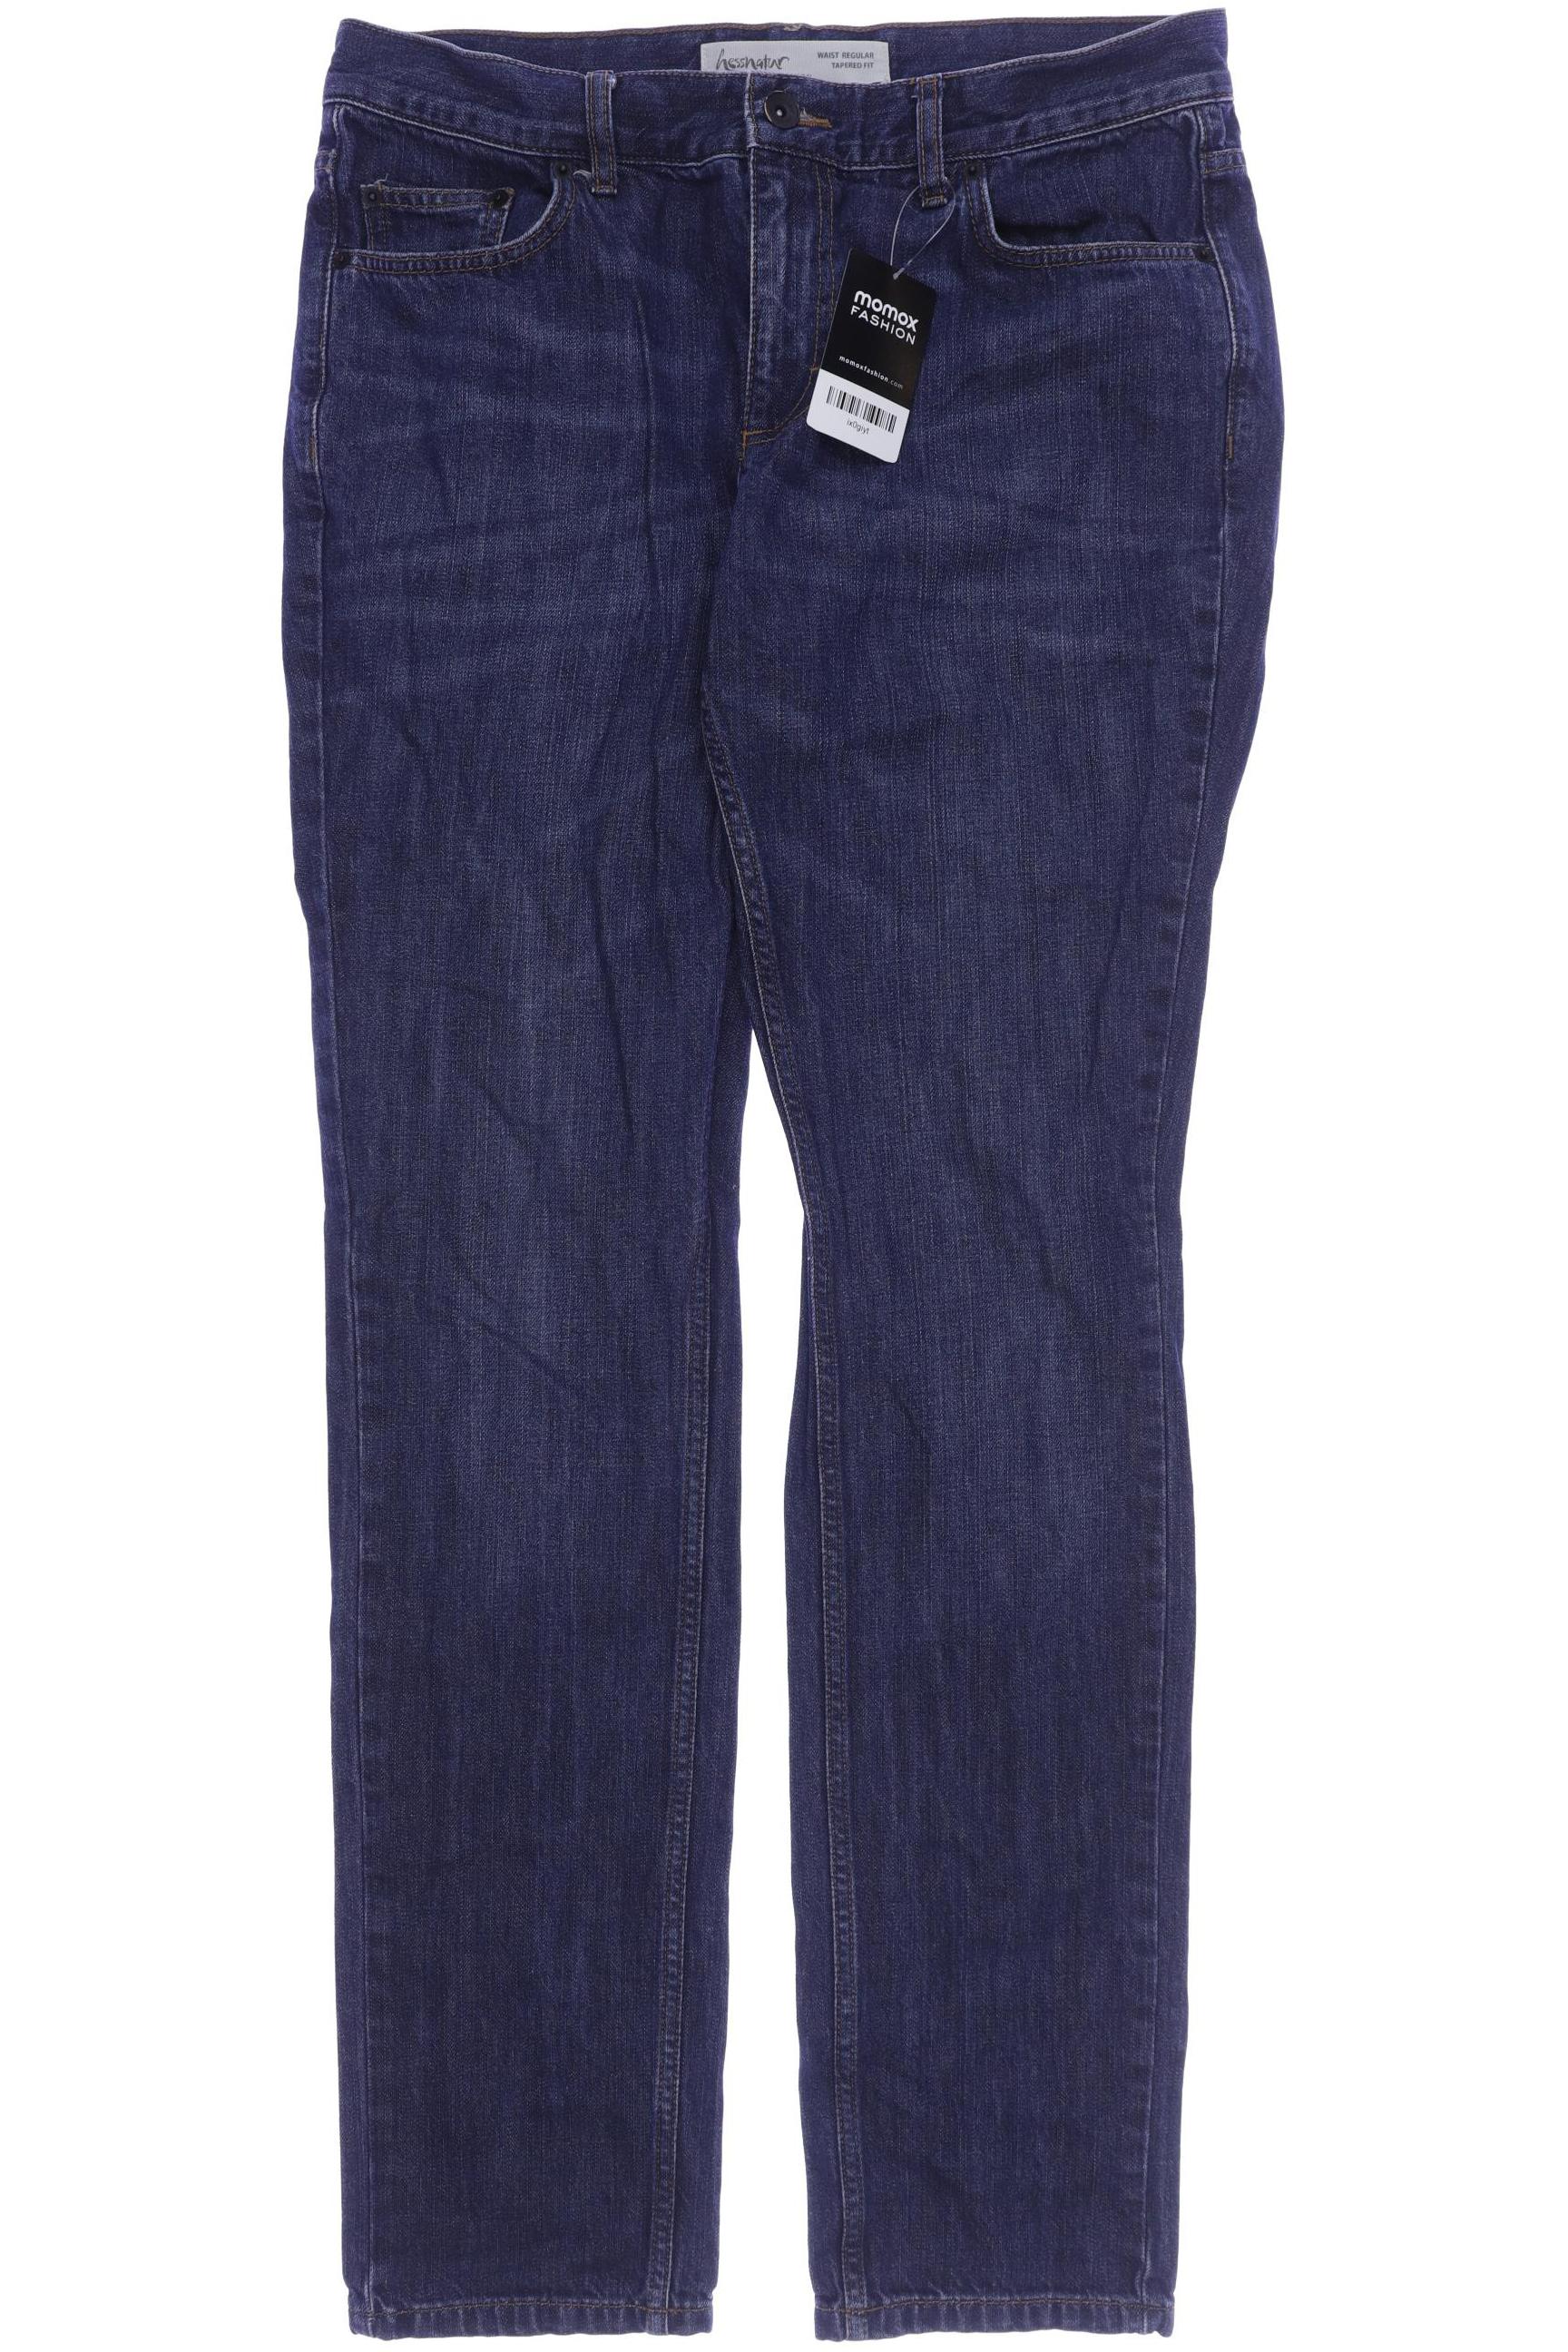 hessnatur Herren Jeans, marineblau, Gr. 50 von hessnatur